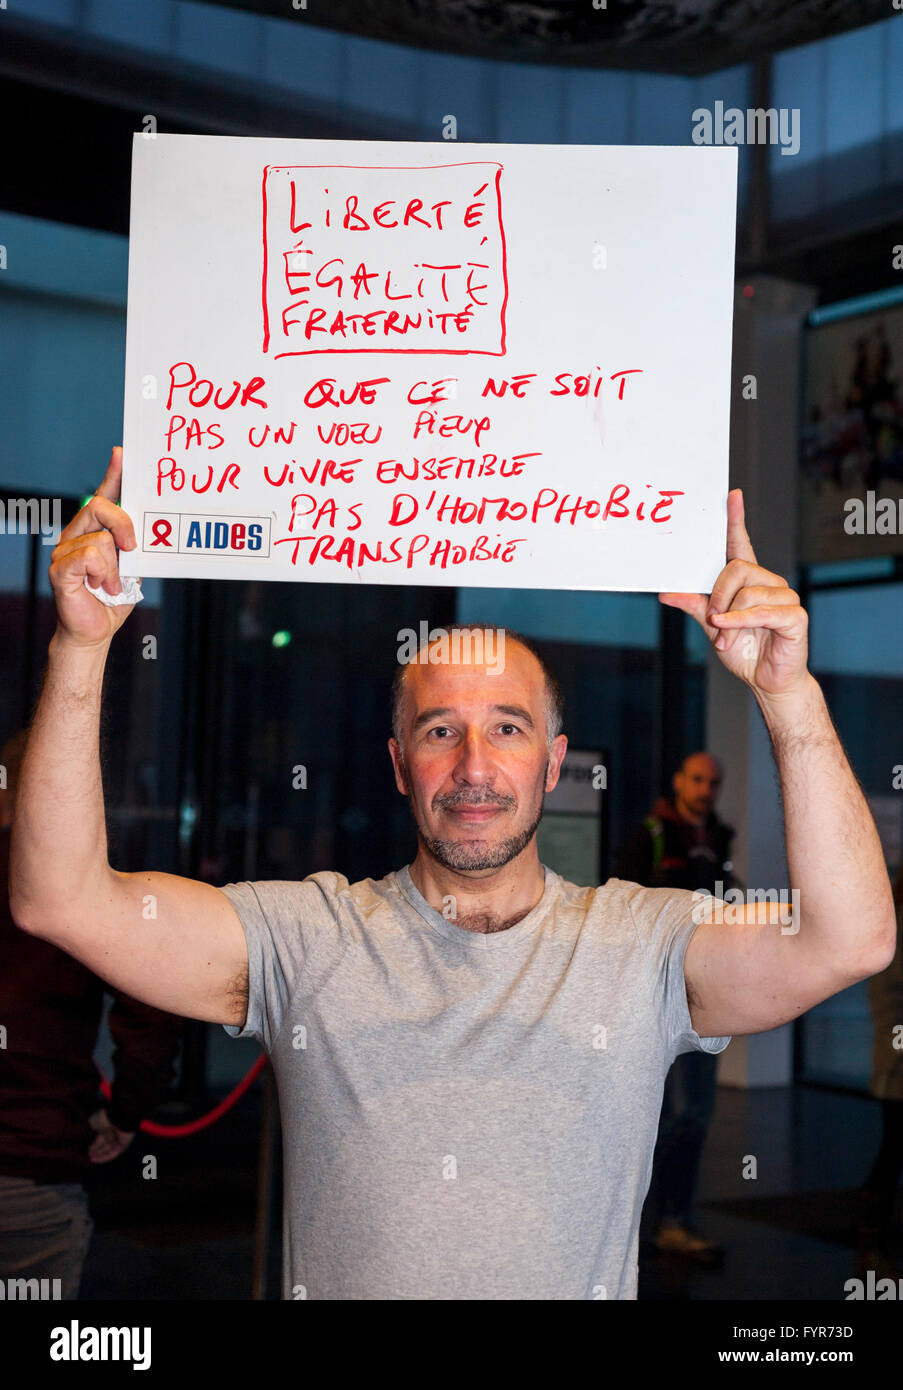 Paris, France, ONG SIDA AIDES activistes, Français Homme tenant des signes de protestation contre la discrimination, homophobie, slogans de justice sociale Banque D'Images